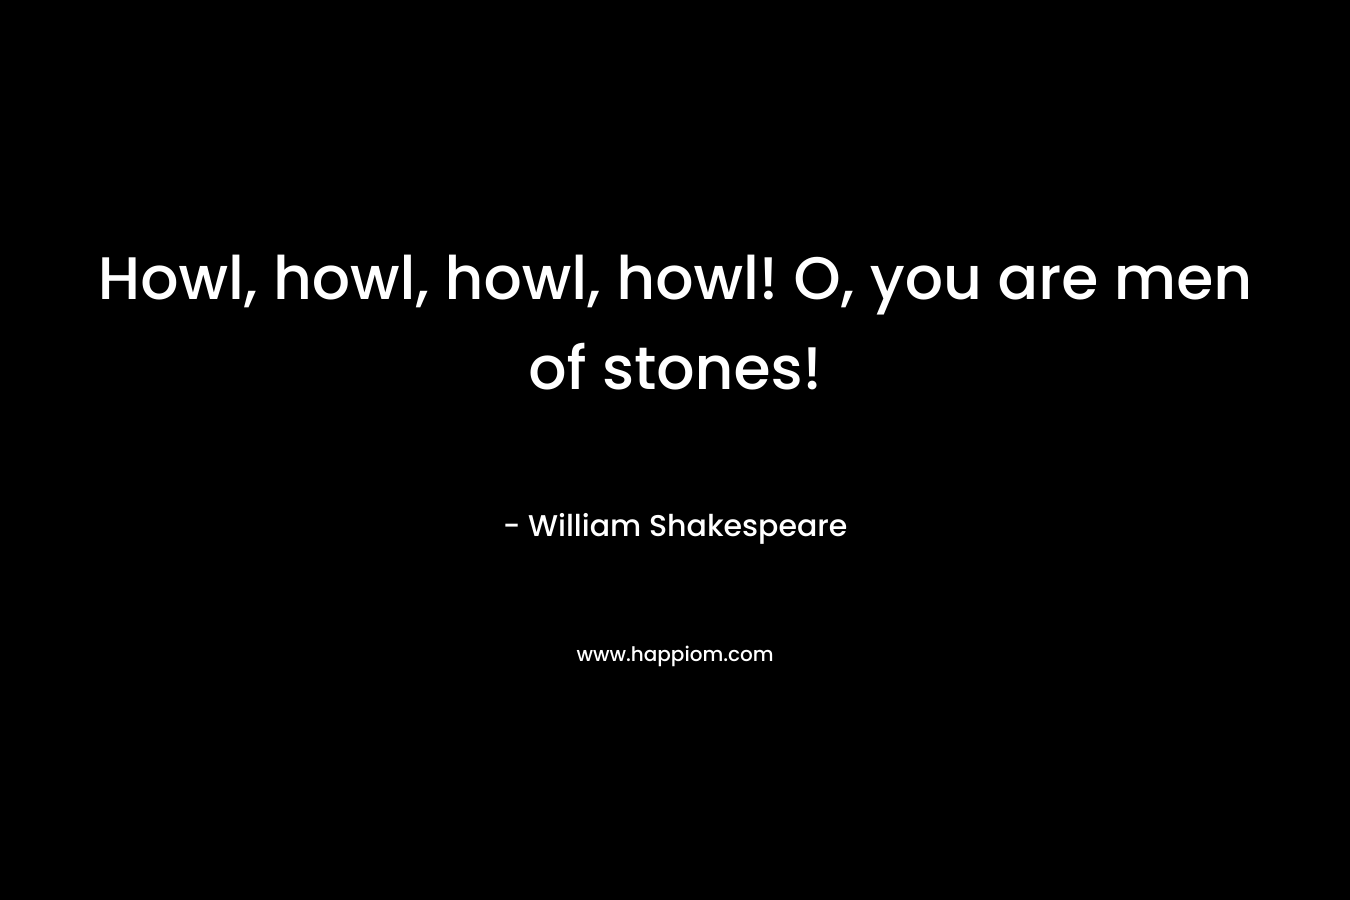 Howl, howl, howl, howl! O, you are men of stones!